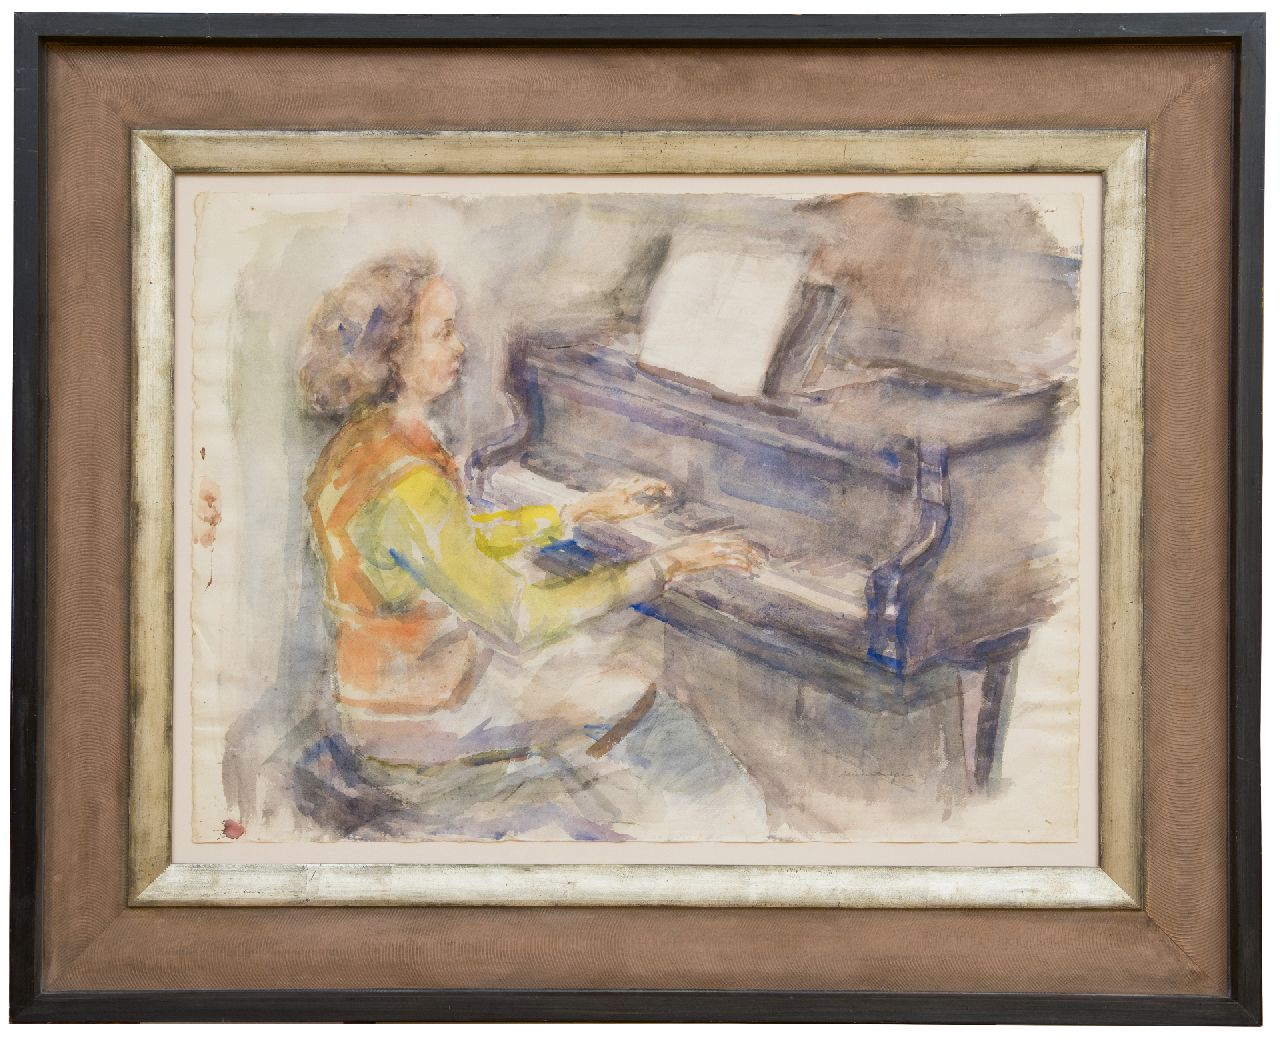 Neuburger E.  | Eliazer 'Elie' Neuburger | Aquarellen en tekeningen te koop aangeboden | Pianospelende vrouw, houtskool en aquarel op papier 55,8 x 76,3 cm, gesigneerd rechtsonder